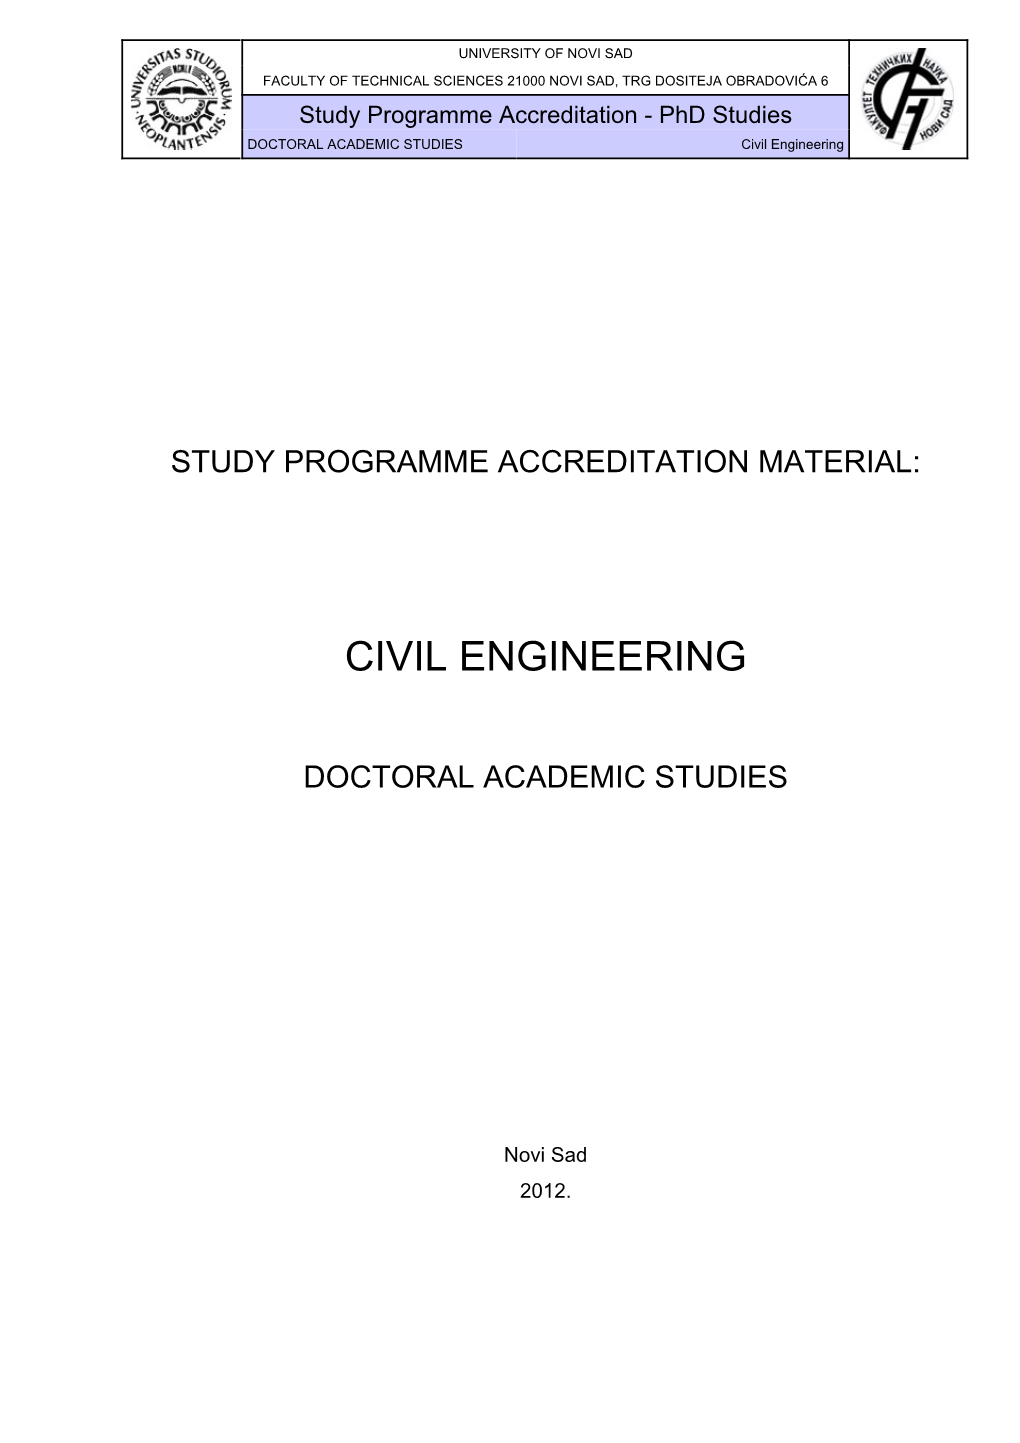 Study Programme (PDF)